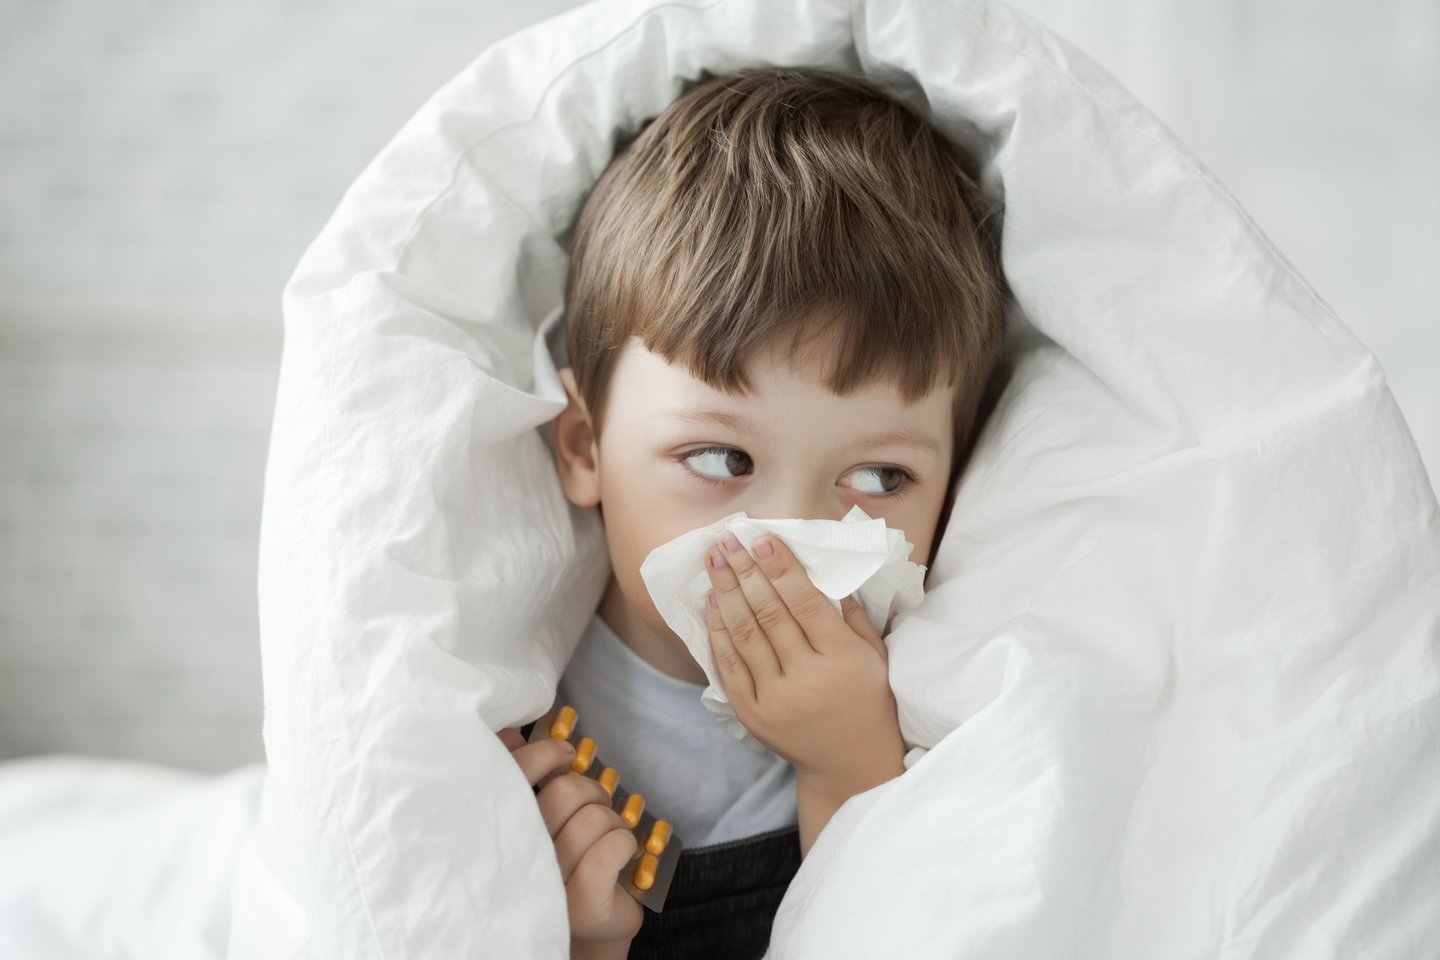 Pastebėjus pirmuosius peršalimo simptomus, būtina reaguoti greitai, todėl namuose svarbu turėti kelias pagrindines priemones, kurios padės sustabdyti ligą ir vaikui pasijusti geriau.<br>123rf nuotr.